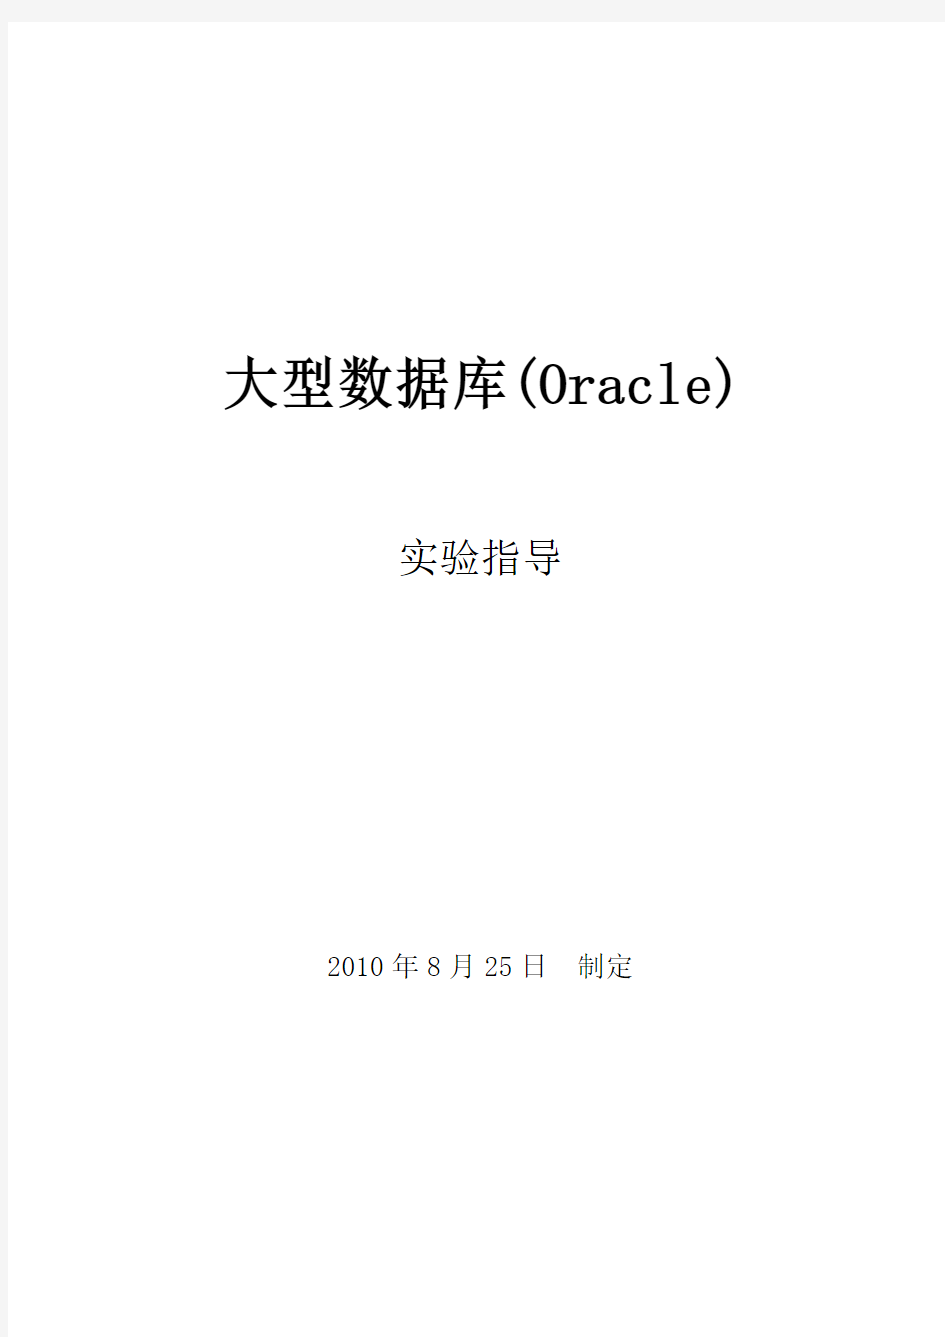 实验指导书《大型数据库(Oracle)》